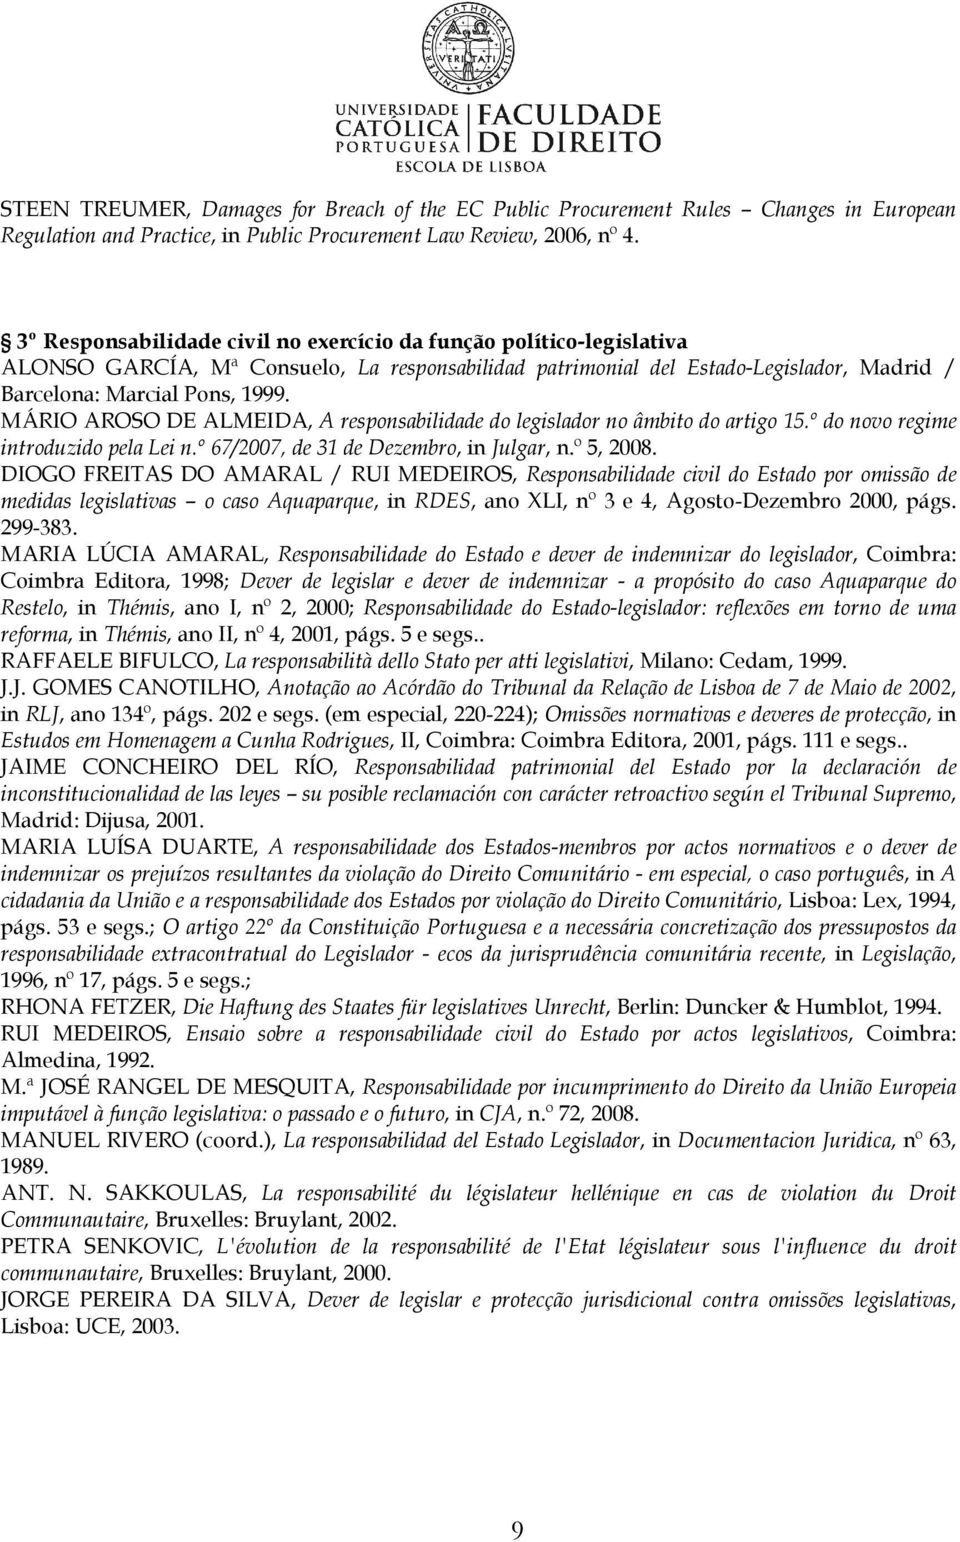 MÁRIO AROSO DE ALMEIDA, A responsabilidade do legislador no âmbito do artigo 15.º do novo regime introduzido pela Lei n.º 67/2007, de 31 de Dezembro, in Julgar, n.º 5, 2008.